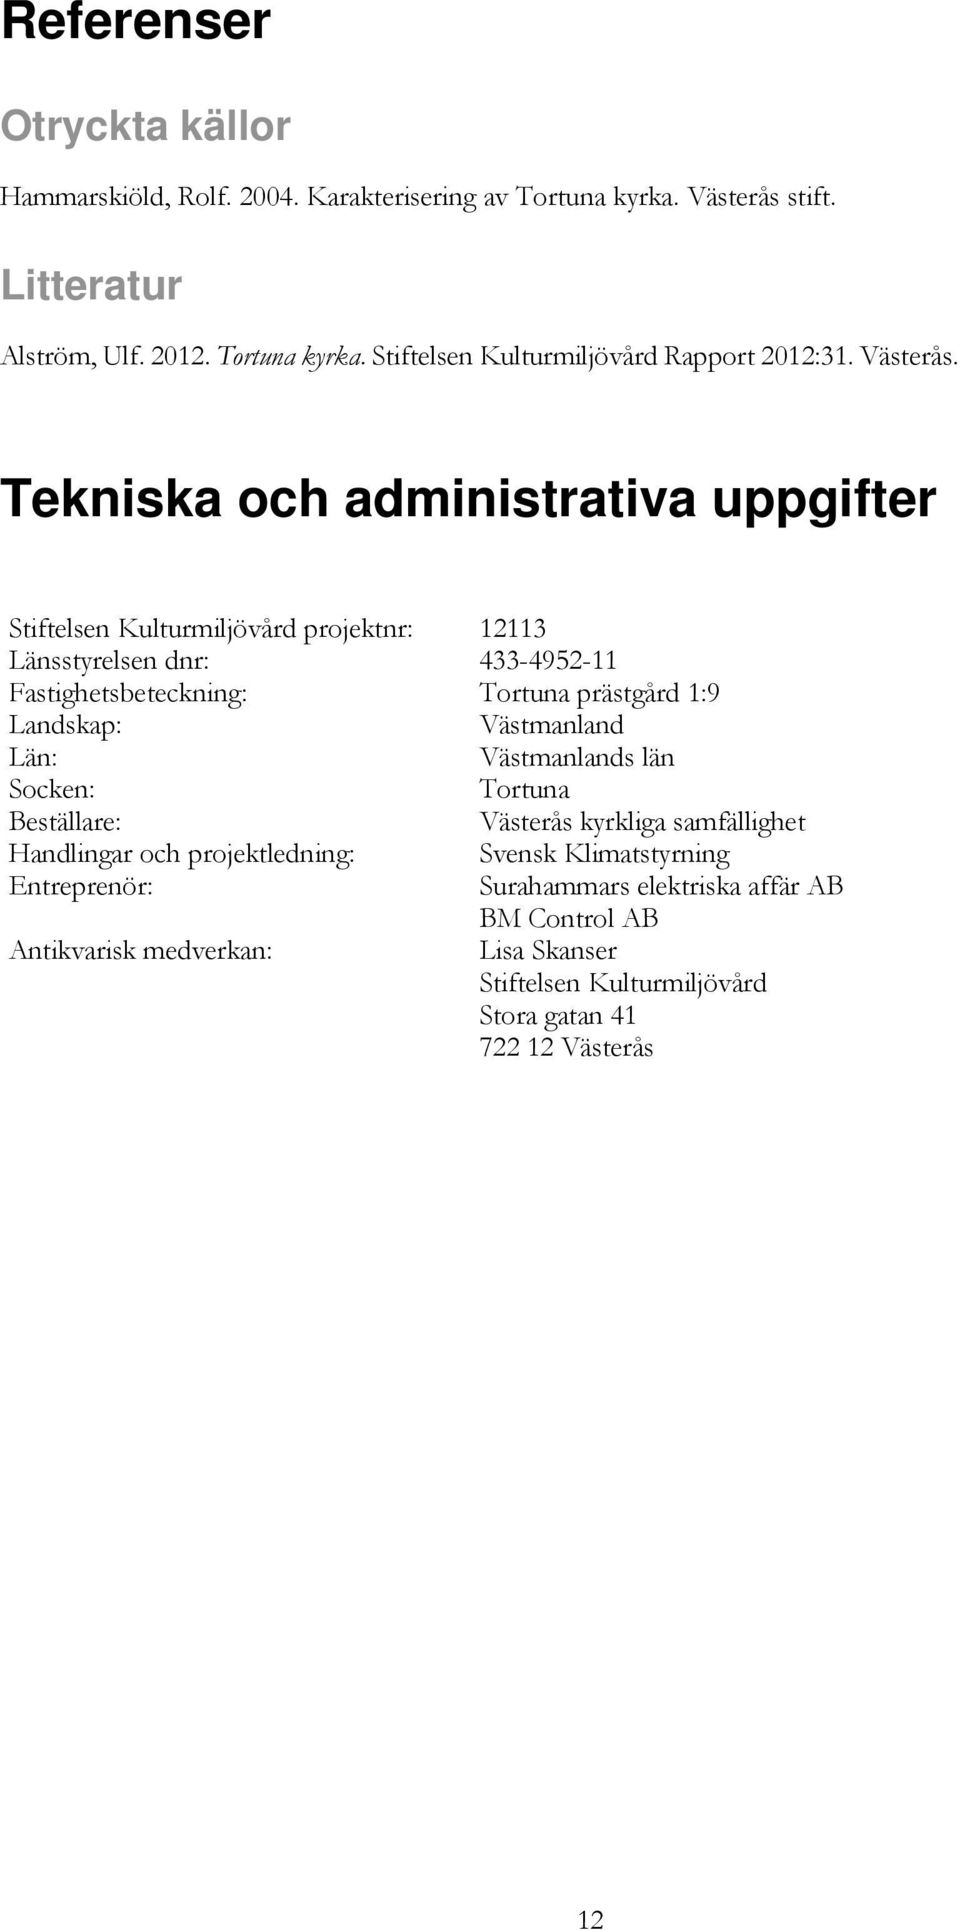 Tekniska och administrativa uppgifter Stiftelsen Kulturmiljövård projektnr: 12113 Länsstyrelsen dnr: 433-4952-11 Fastighetsbeteckning: Tortuna prästgård 1:9 Landskap: